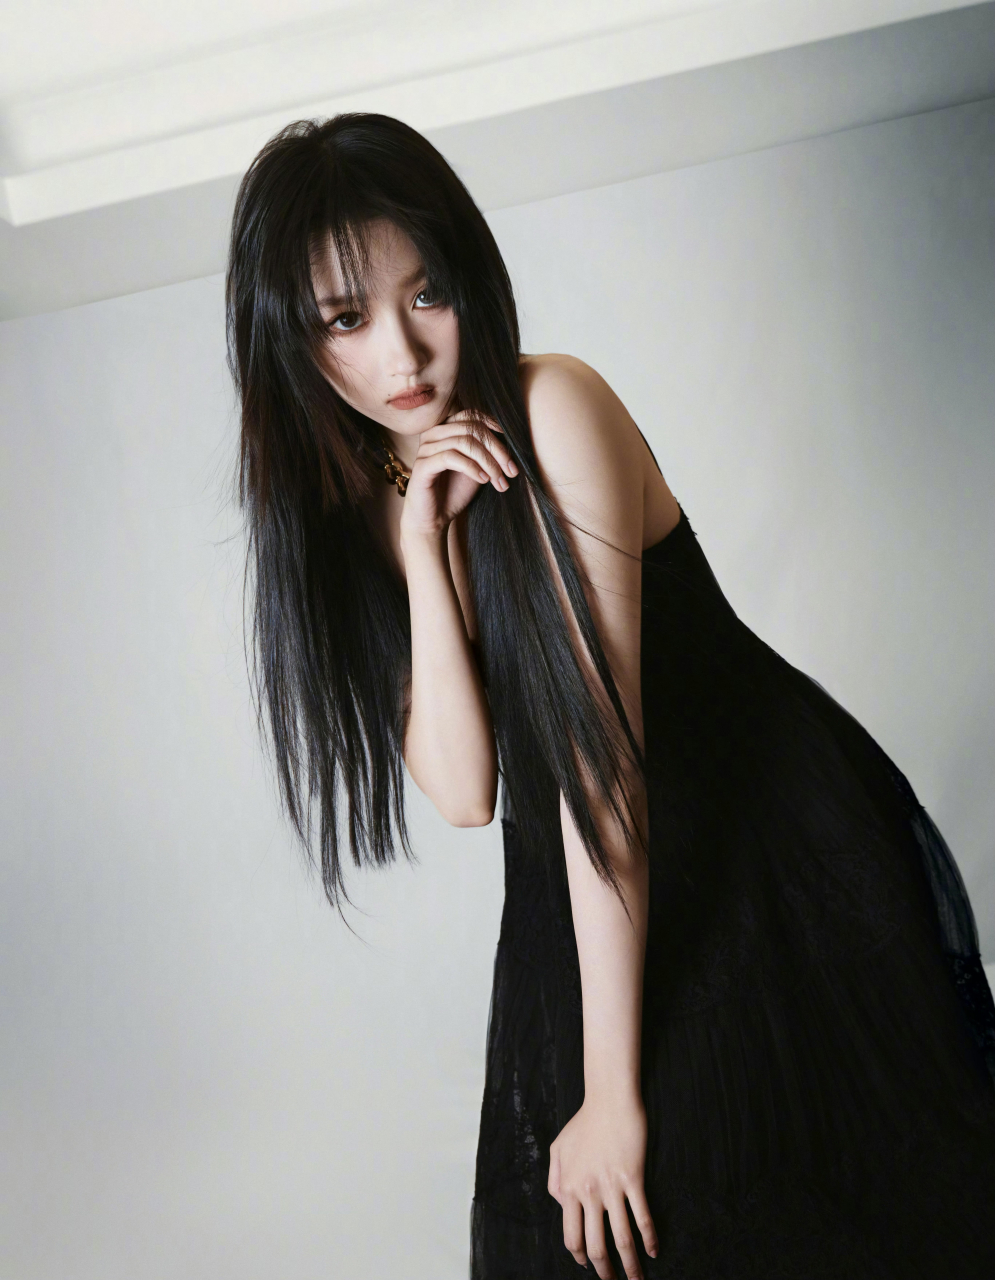 关晓彤今日暗夜黑纱裙活动图,齐刘海黑长直发型有种小魔女的感觉